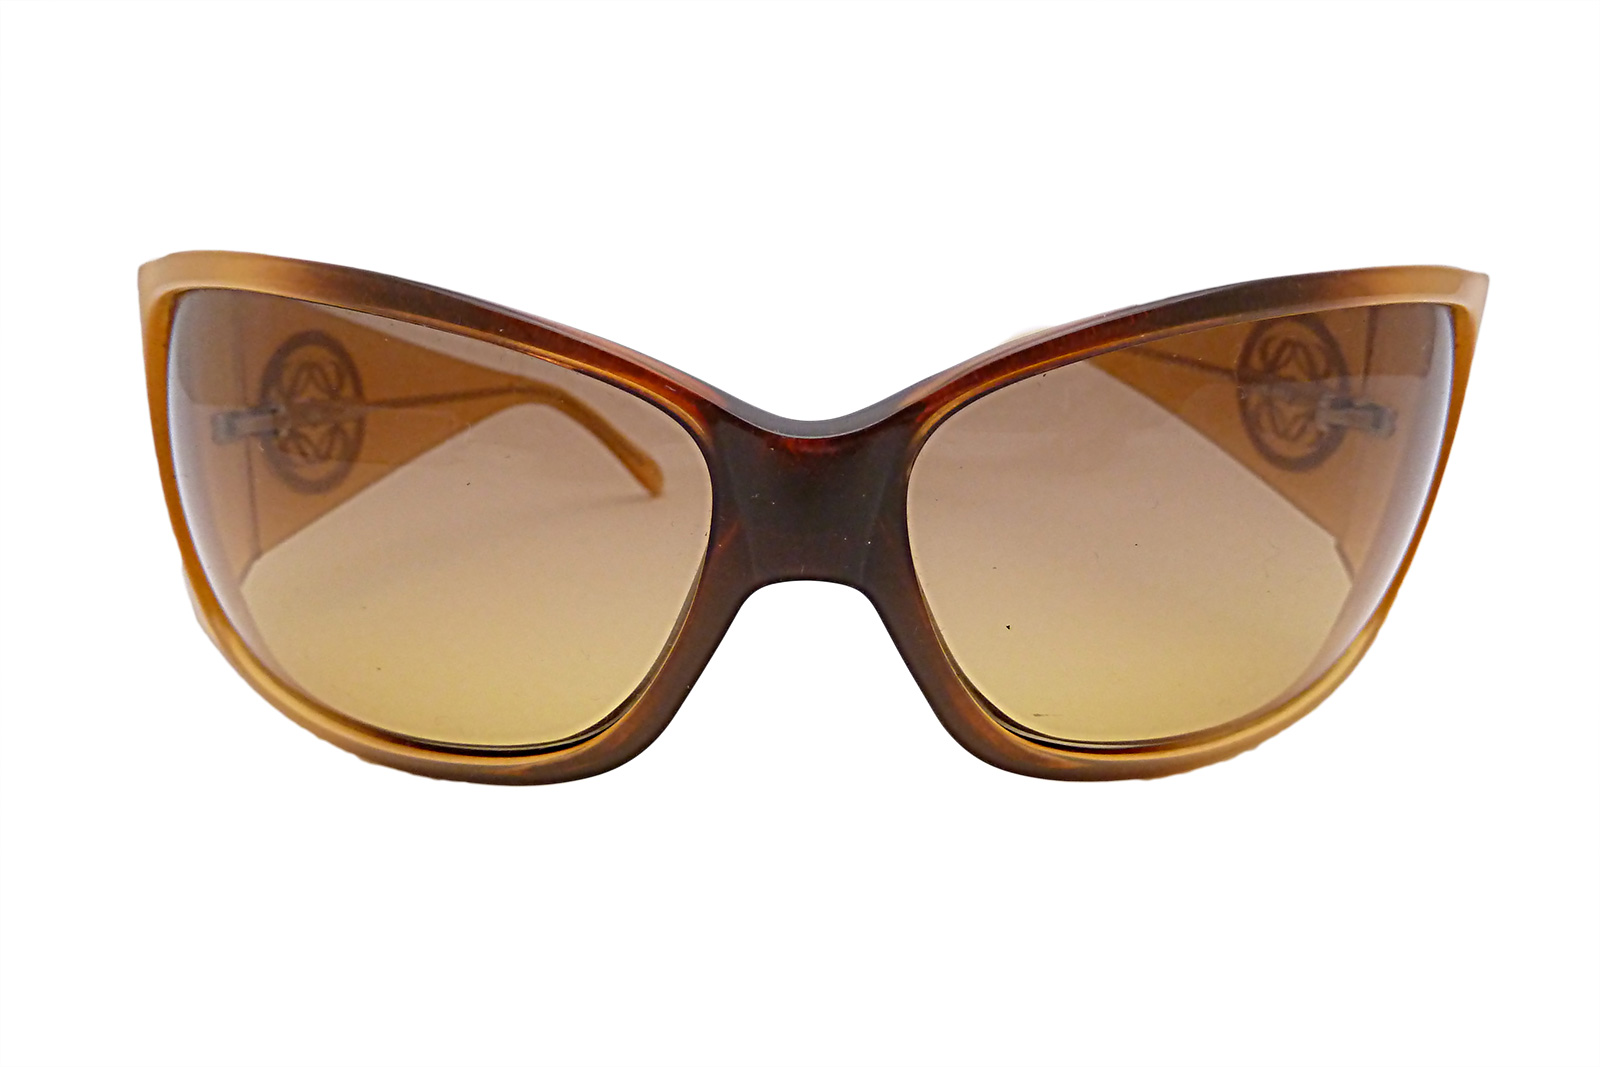 Auth LOEWE Anagram Sunglasses Light Brown *Needs repair* - e13131 | eBay